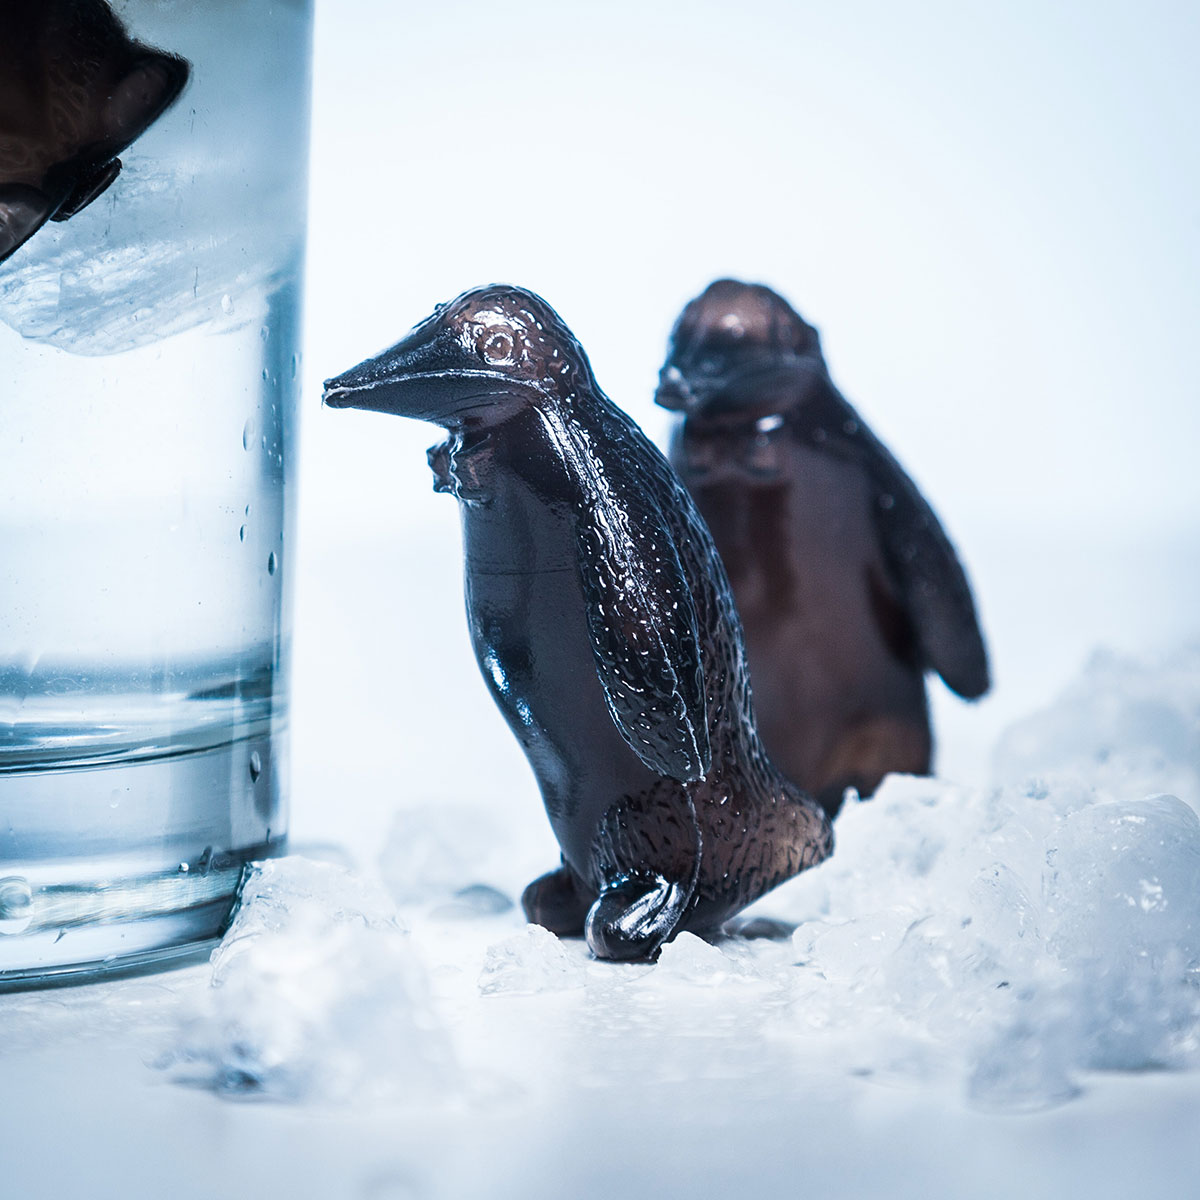 Pingüinos refrigerantes